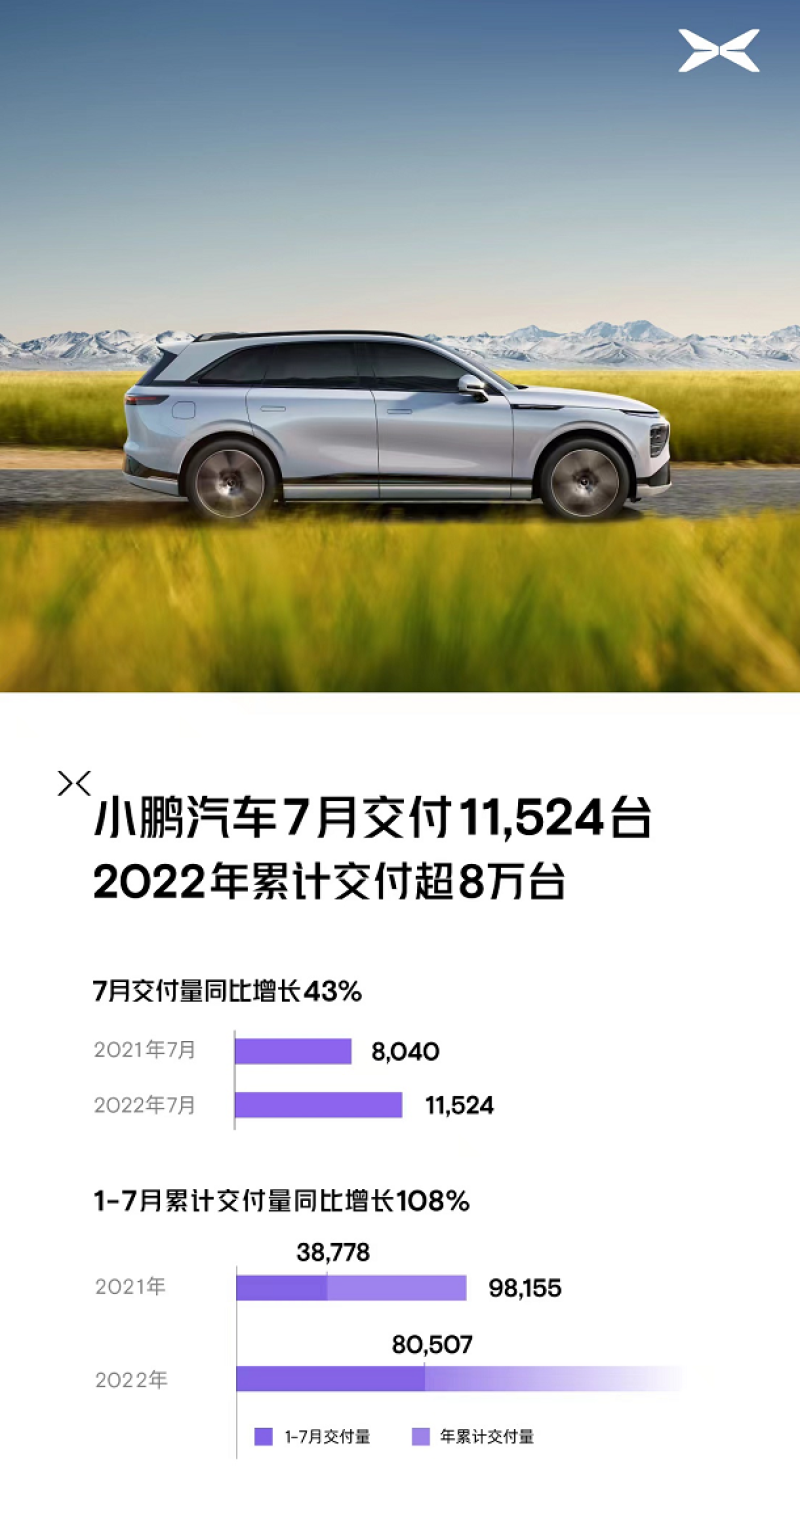 小鹏汽车2022年7月交付11524台 同比增长43%/G9本月开启预订